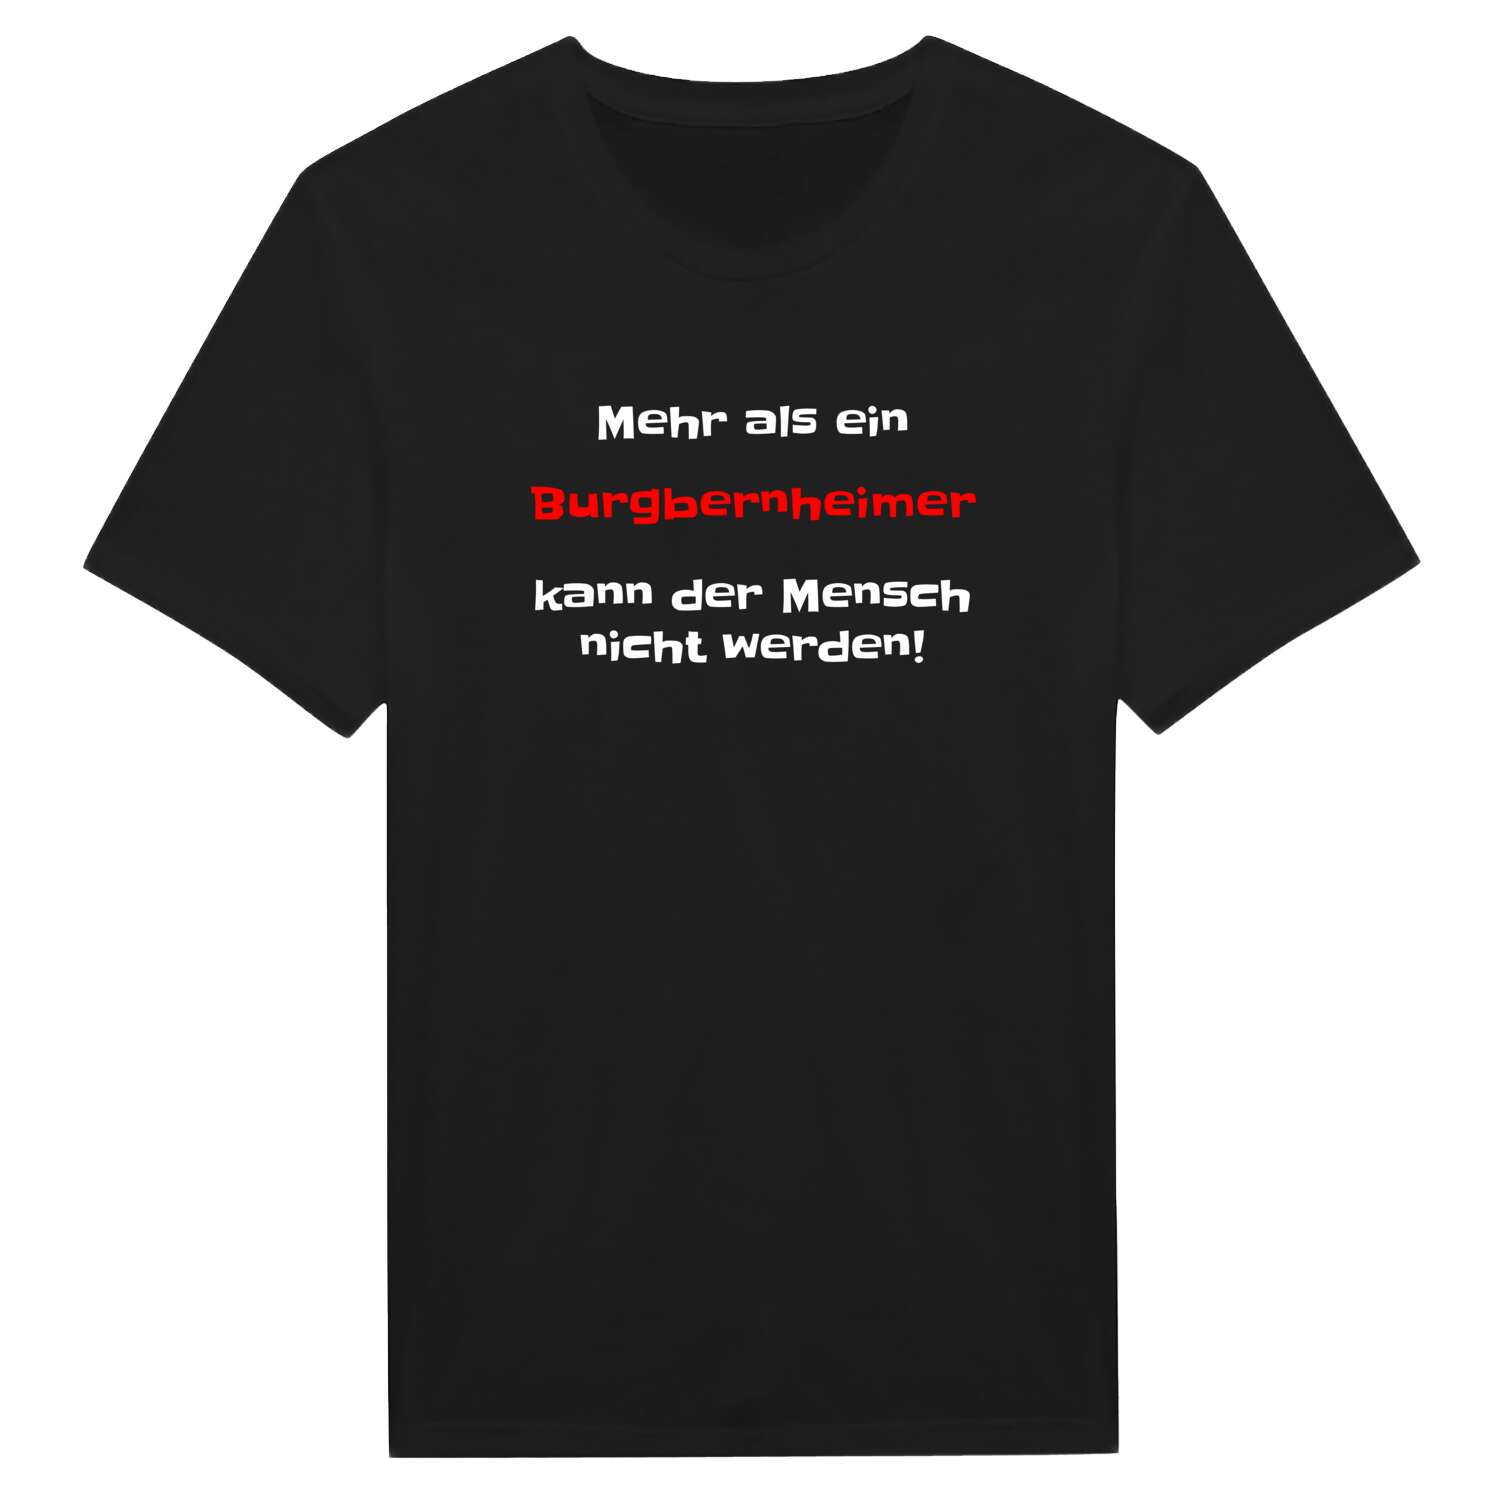 Burgbernheim T-Shirt »Mehr als ein«